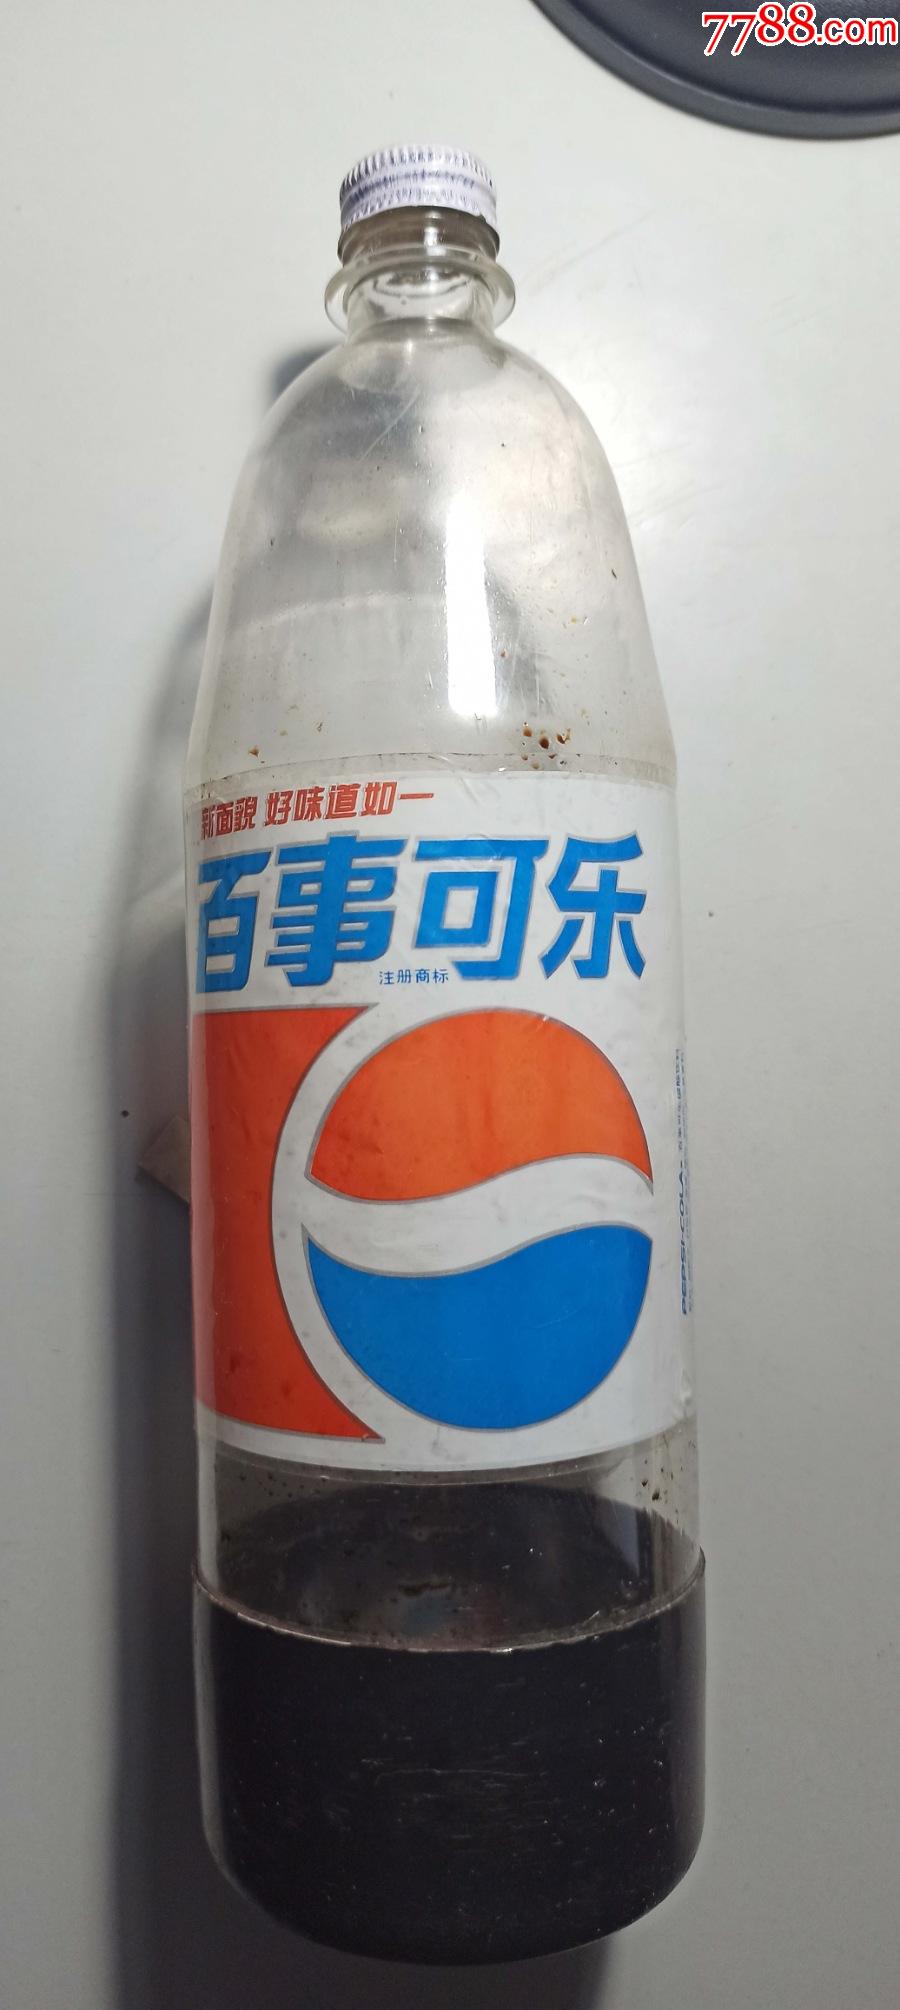 早期百事集团广州百事可乐汽水厂制造百事可乐碳酸饮料空瓶一只